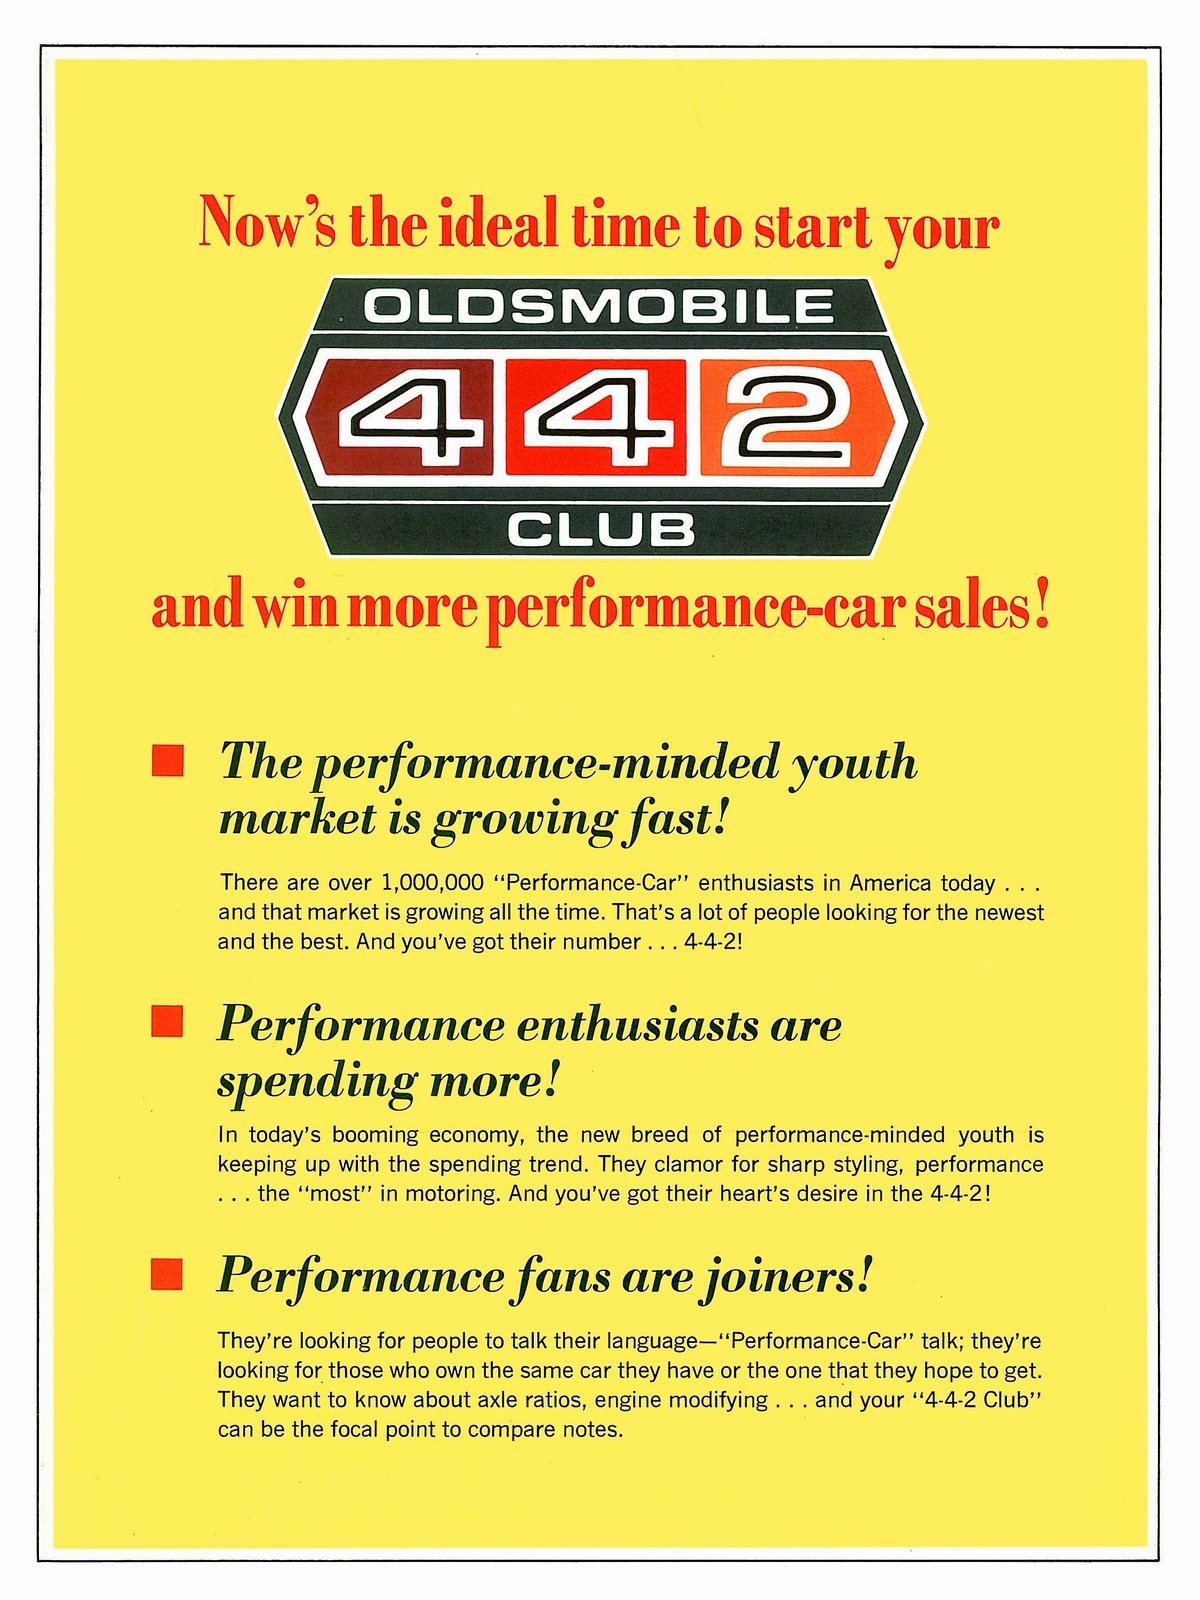 n_1966 Oldsmobile 442 Club Folder-02.jpg